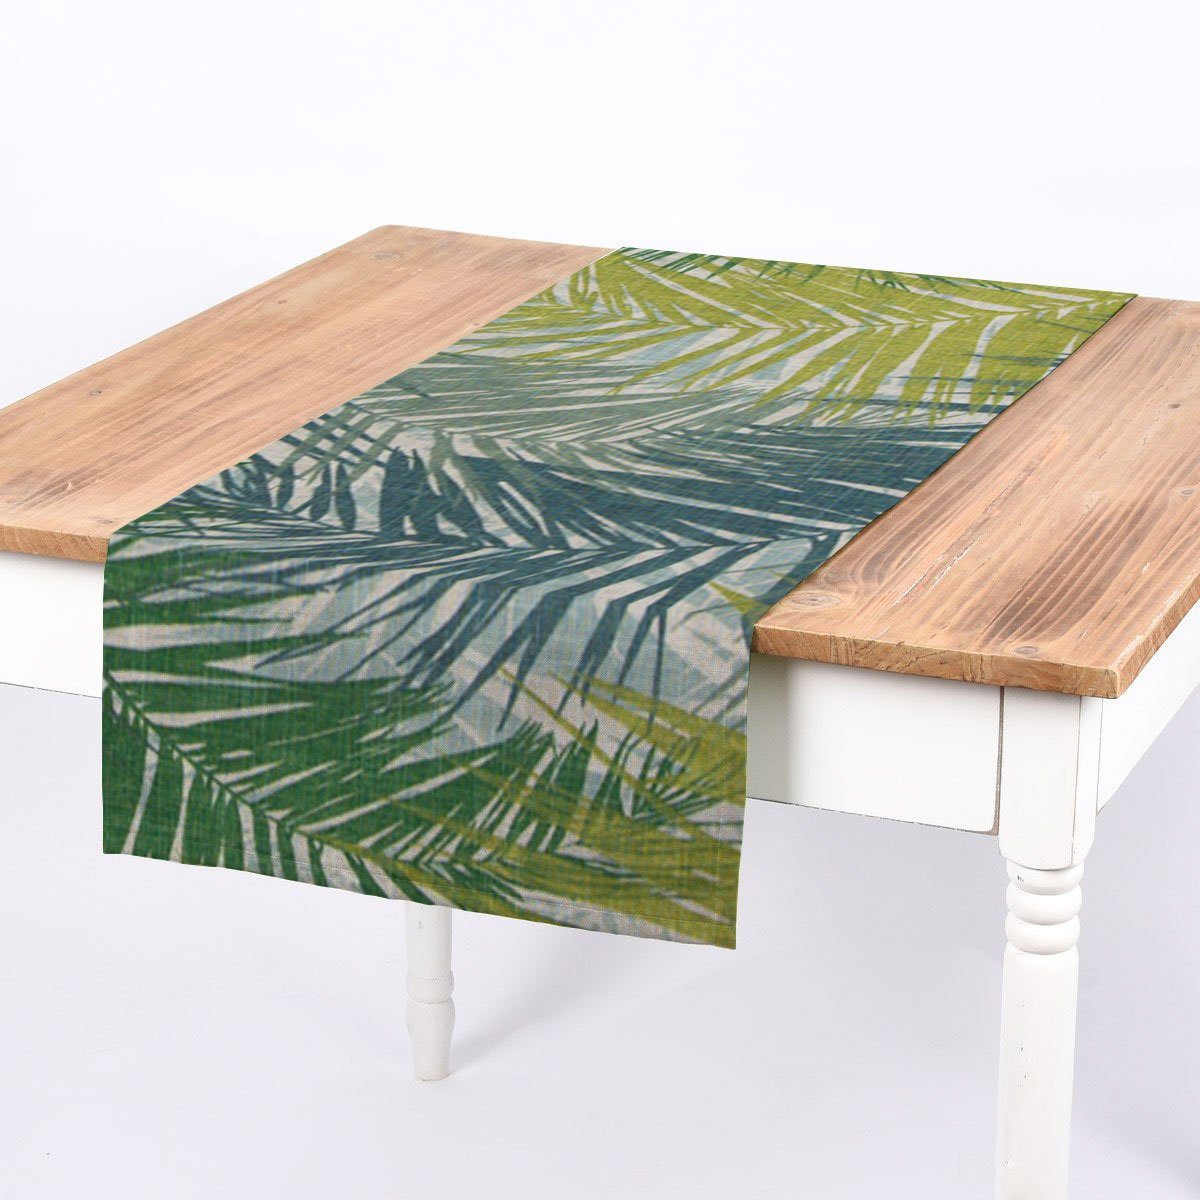 SCHÖNER LEBEN. Tischläufer SCHÖNER LEBEN. Tischläufer Palmenblätter 40x160cm, handmade